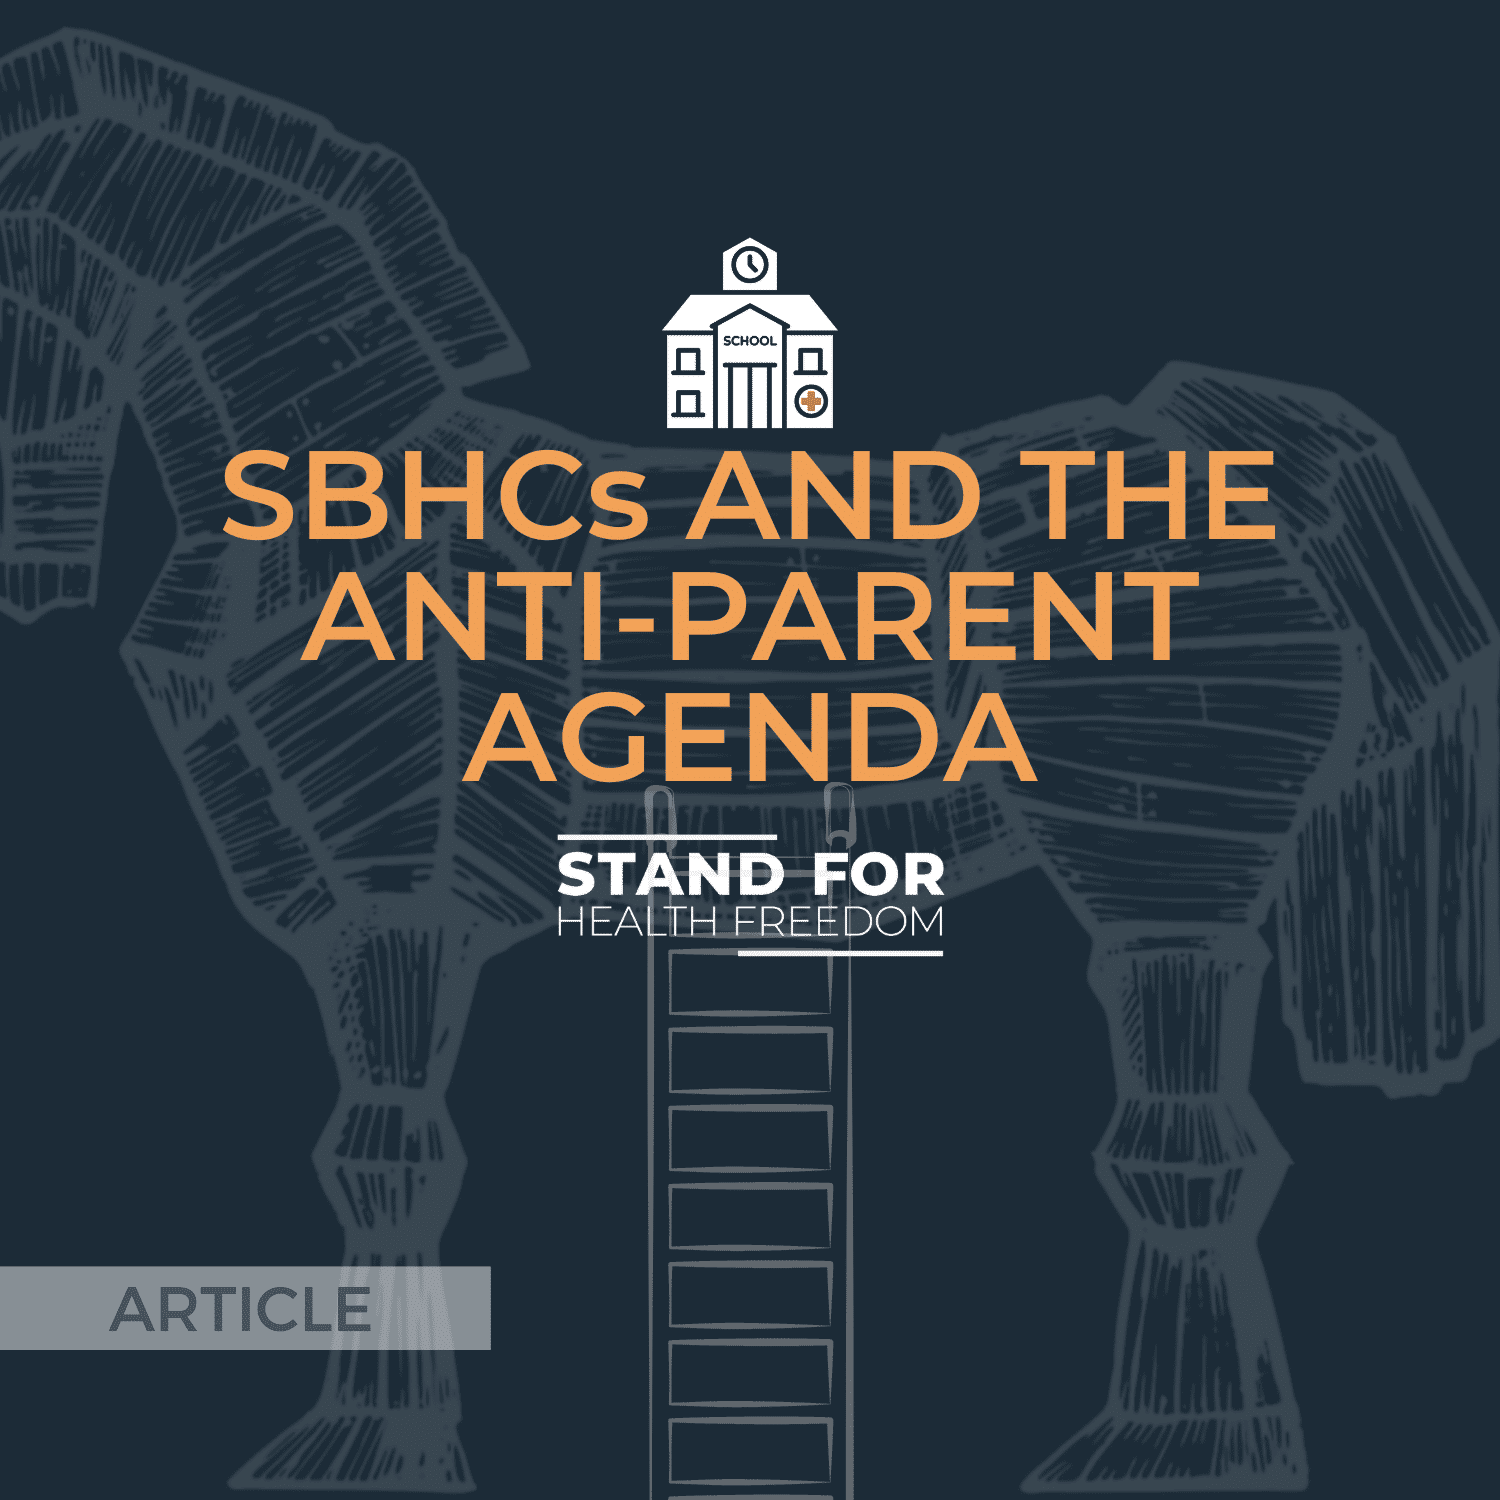 SBHCs and the anti-parent agenda